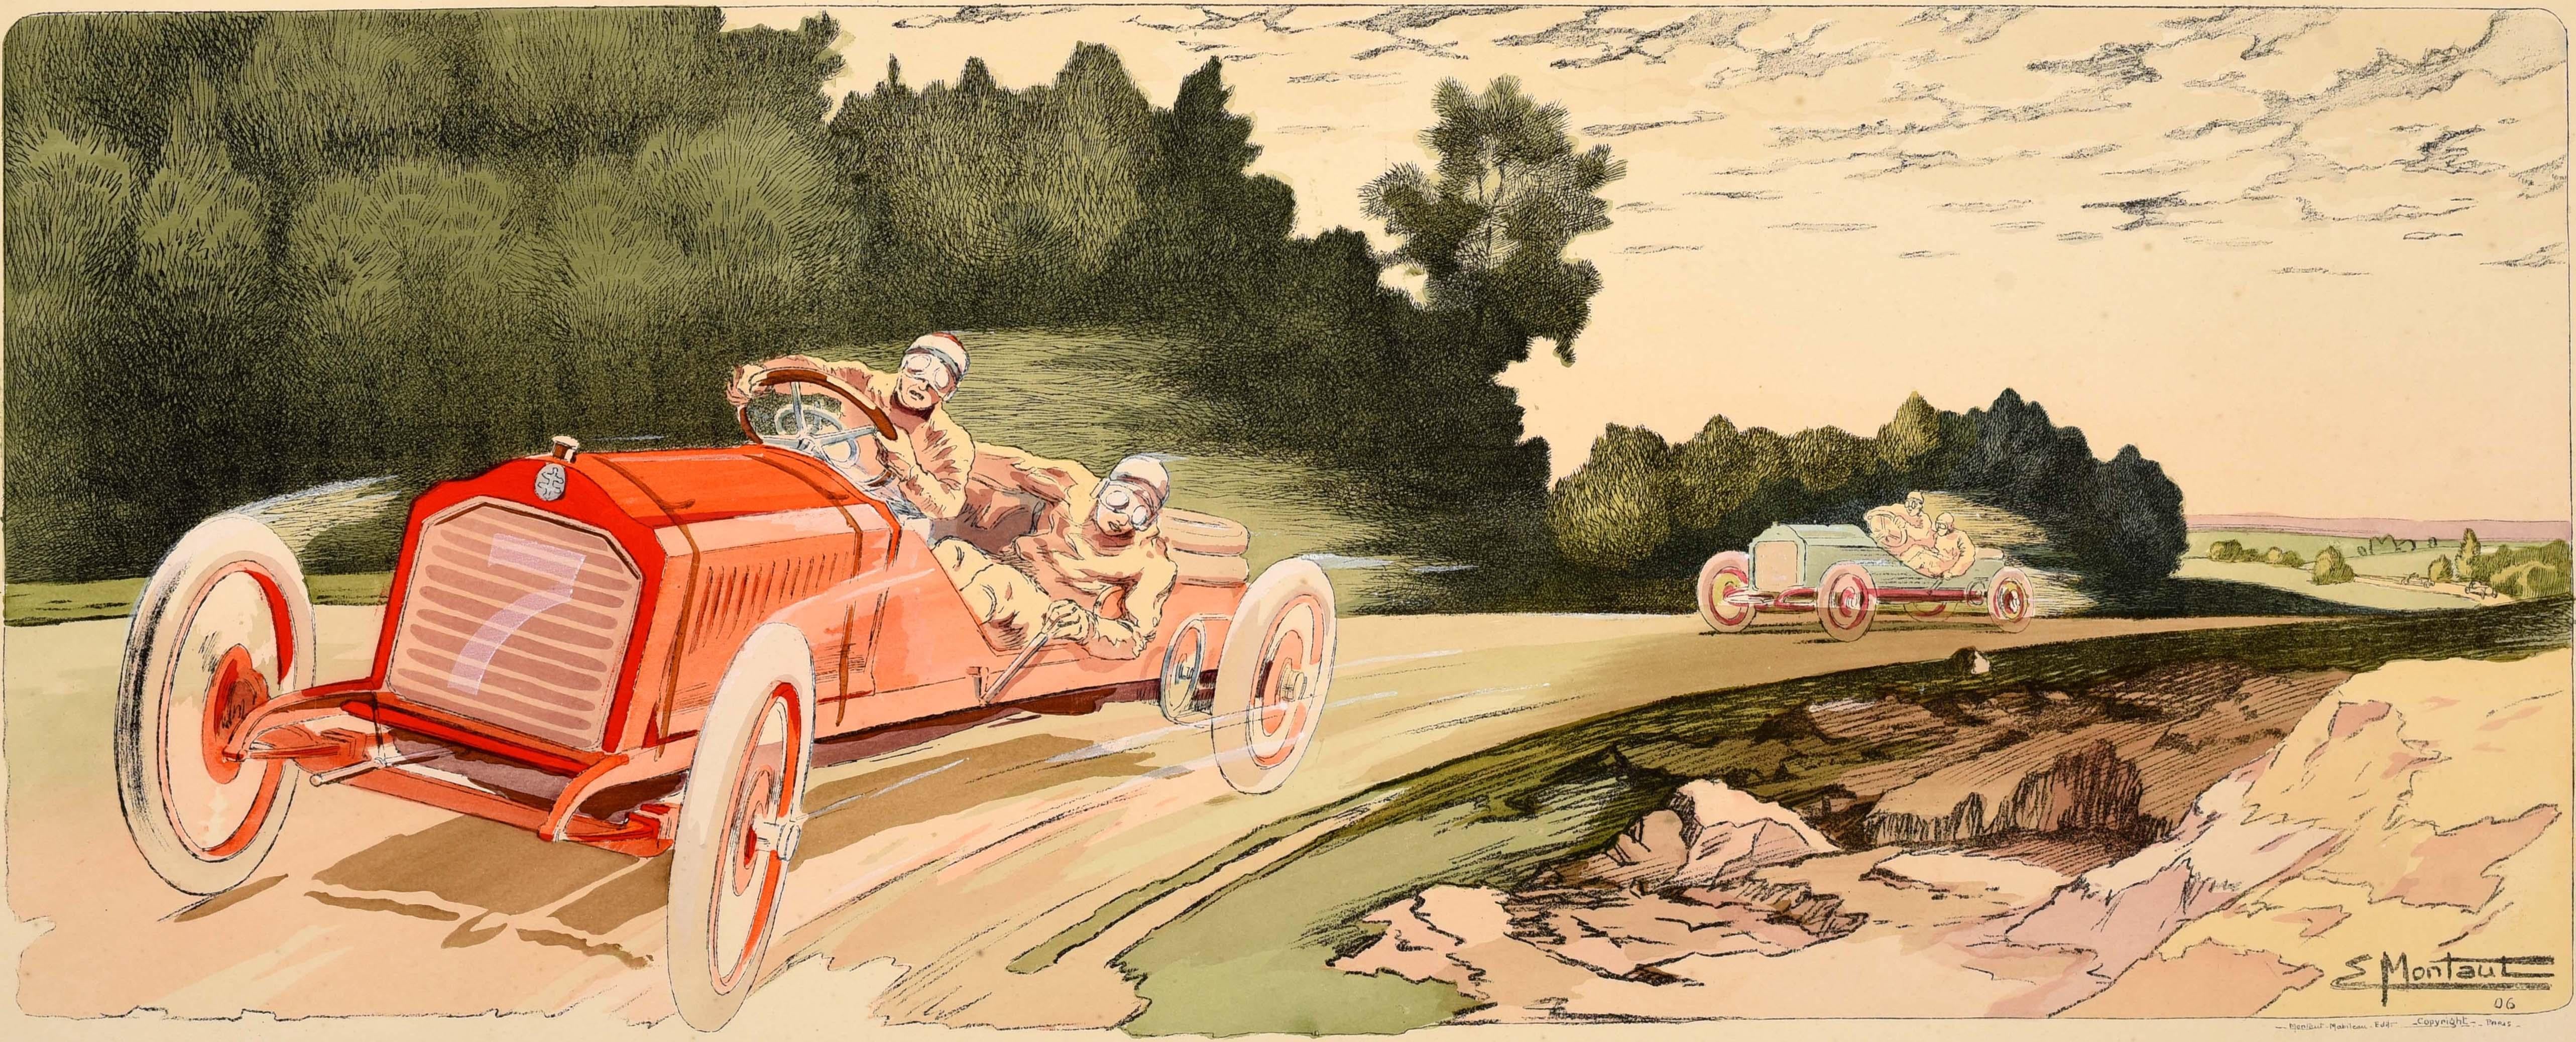 Affiche ancienne originale de sport automobile faisant la promotion d'Arthur Duray, vainqueur de la course Circuit des Ardennes Belge 1906 - Le dessin représente des voitures rouges et vertes courant sur une piste de course pittoresque avec des